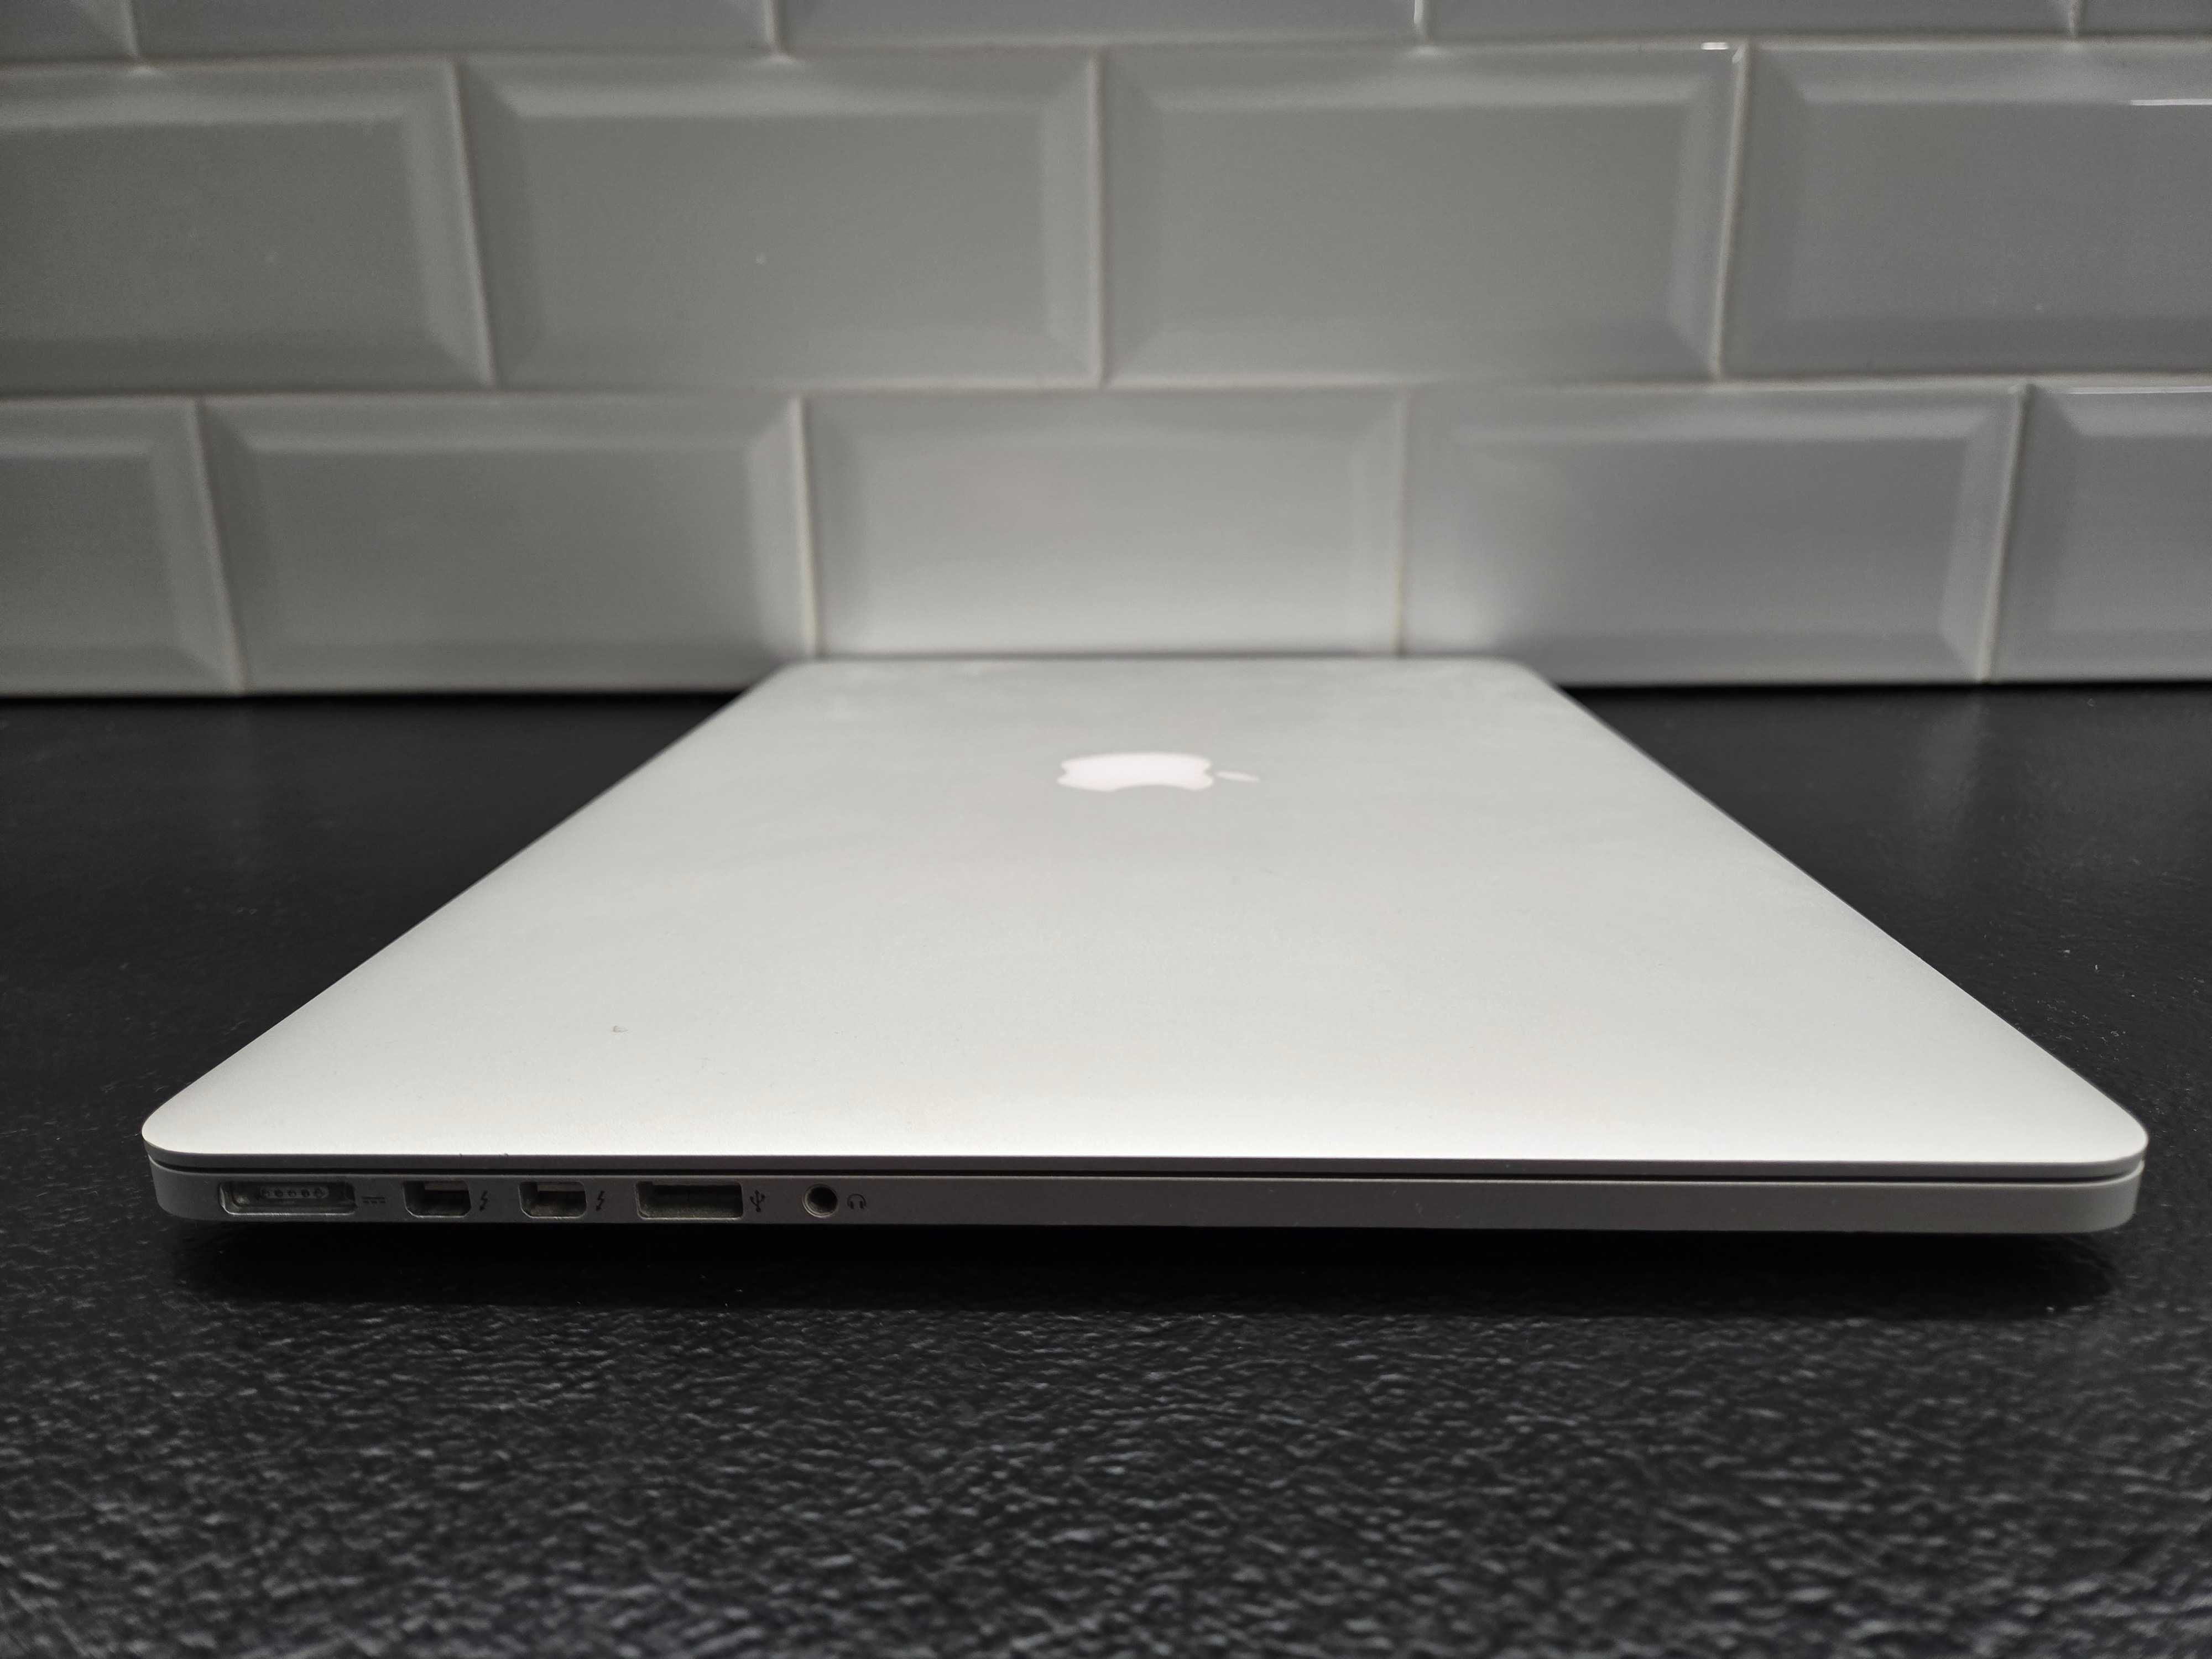 MacBook Pro 15 (Mid 2015, MJLT2) i7/16Gb/512Gb SSD/AMD R9 M370X 2 GB